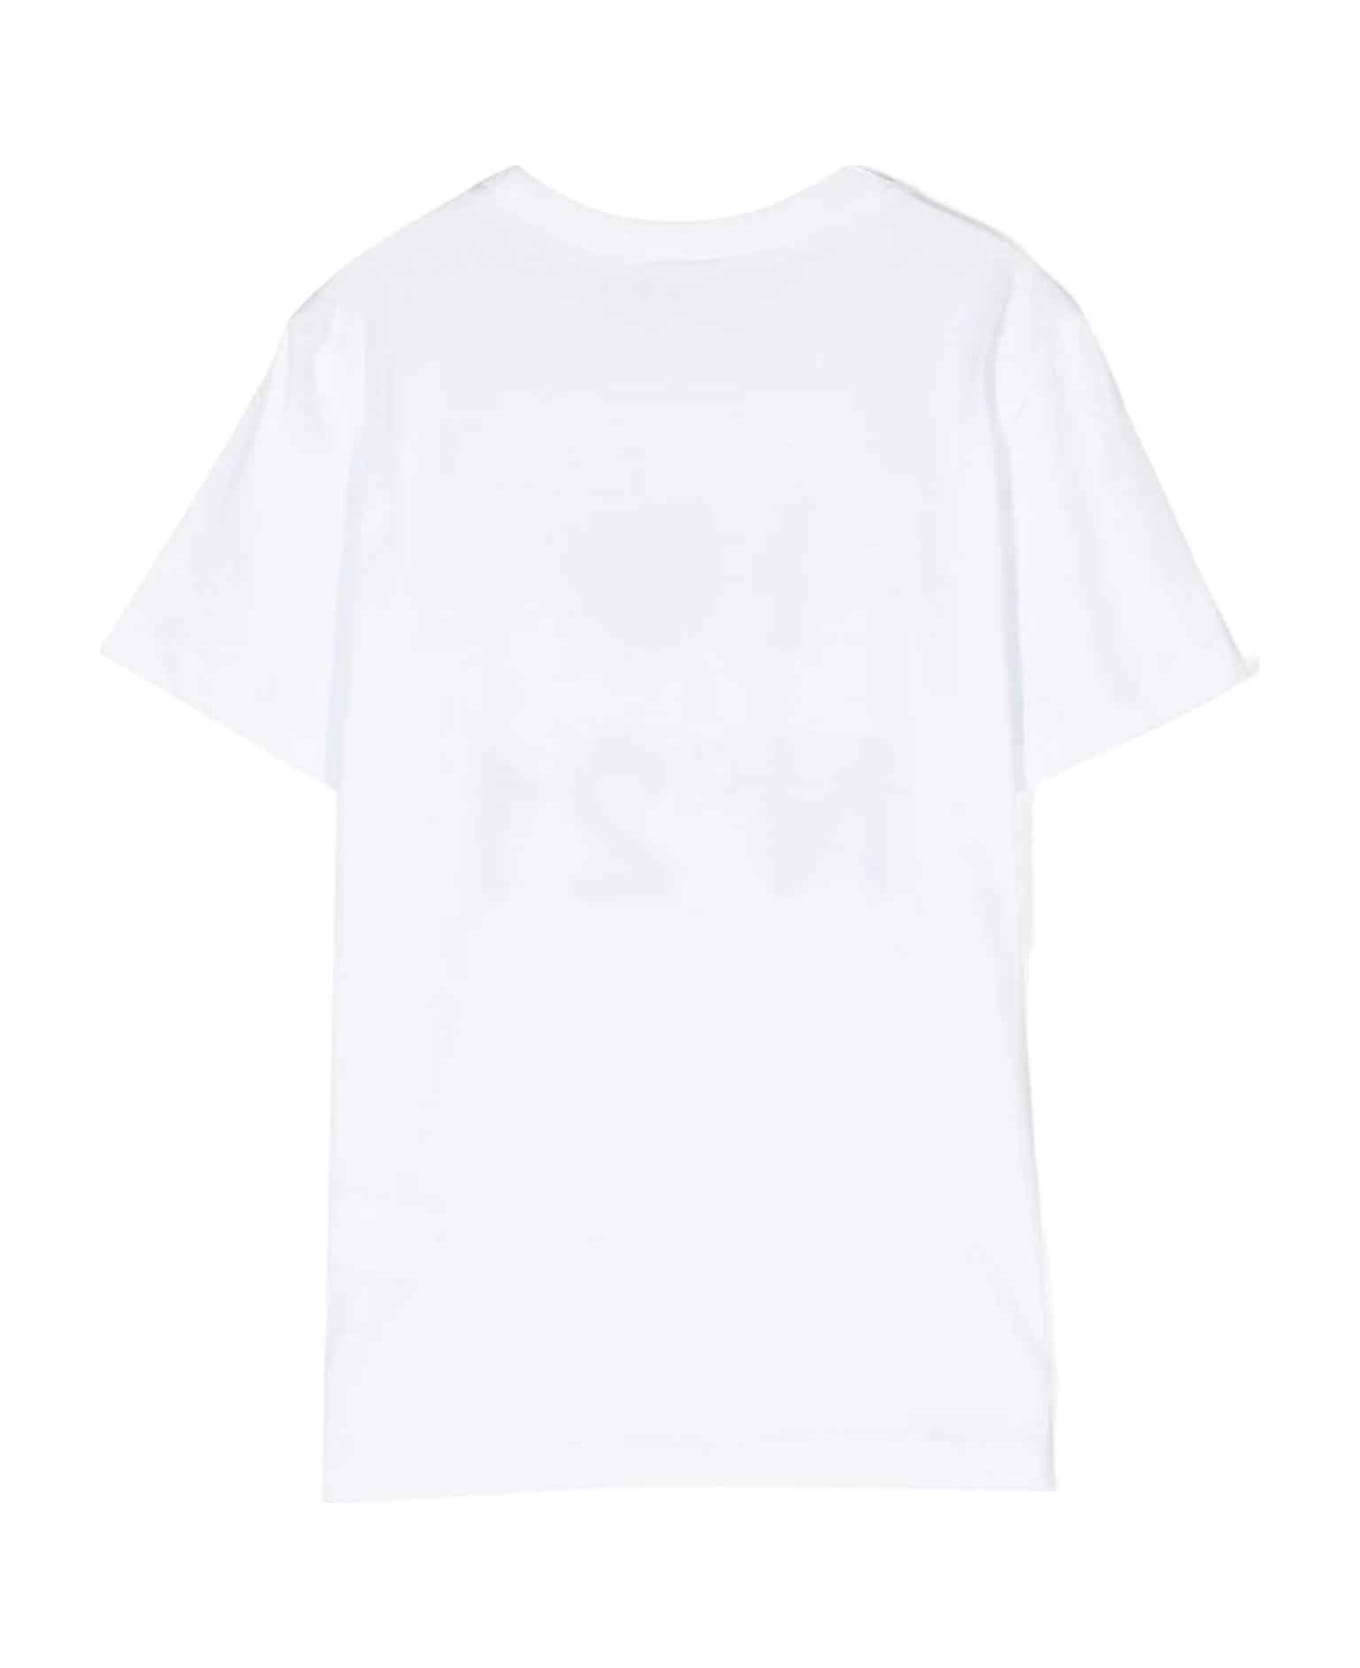 N.21 White T-shirt Girl Nº21 Kids - Bianco